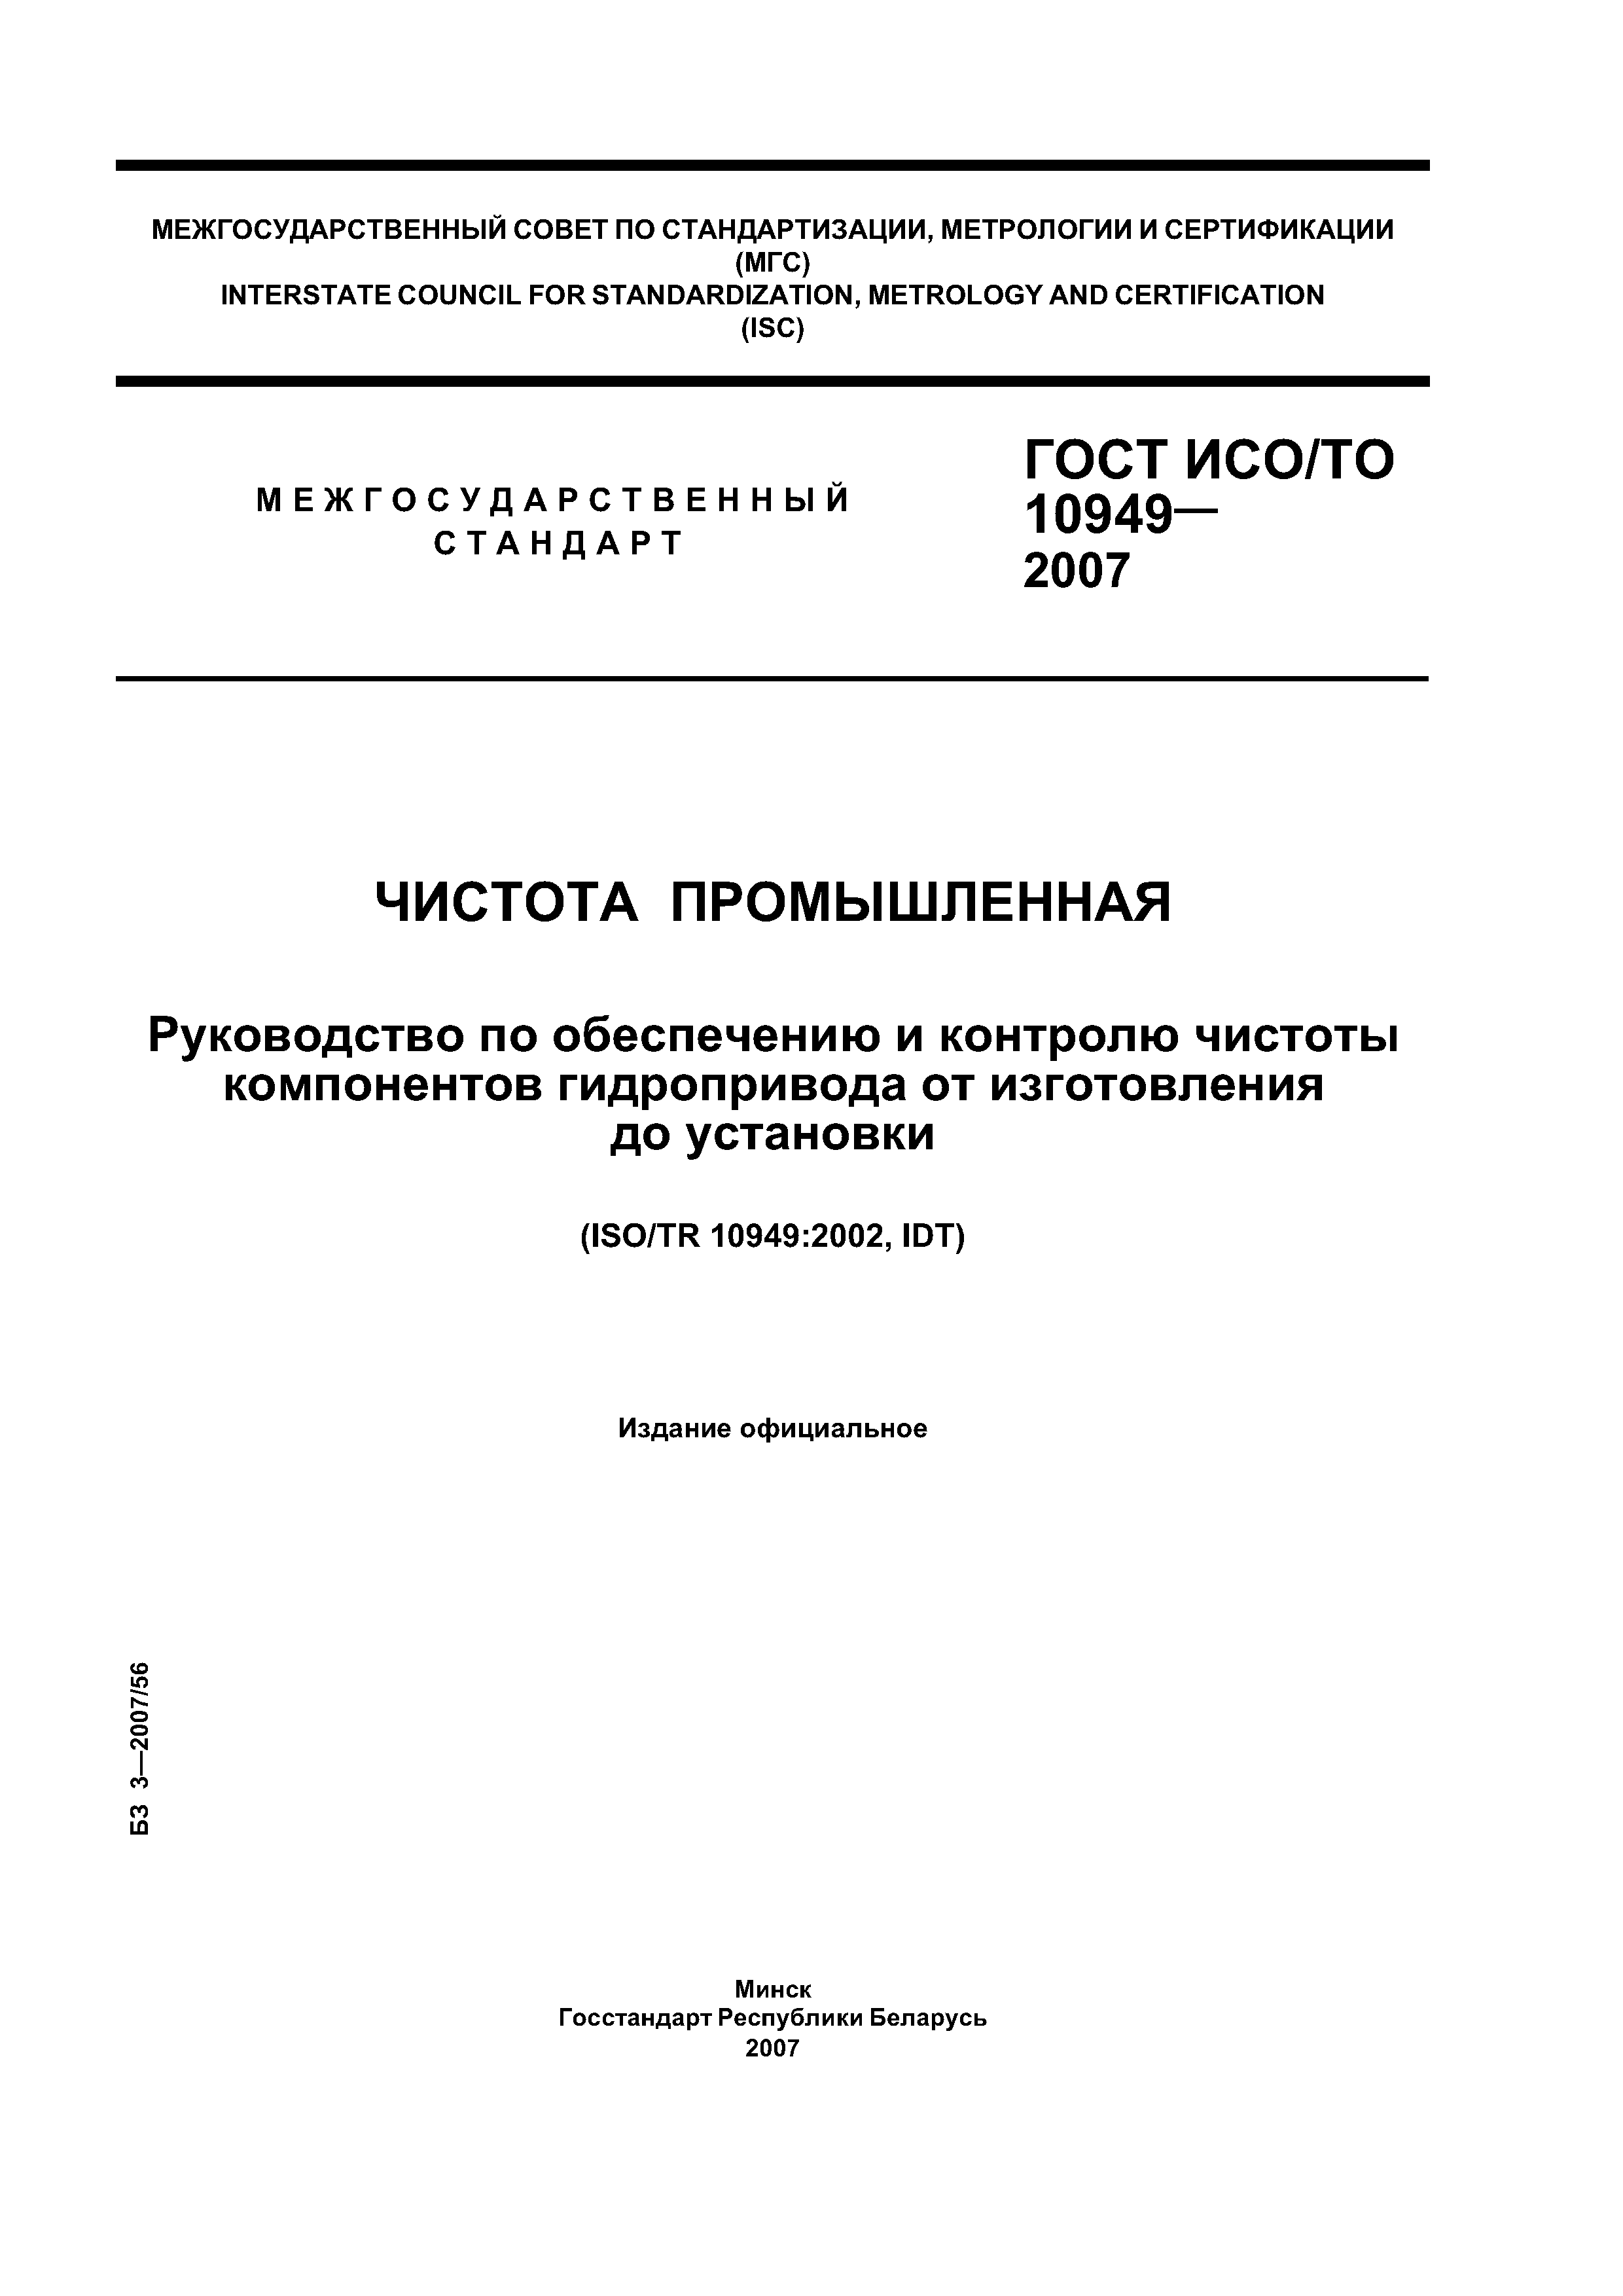 ГОСТ ИСО/ТО 10949-2007